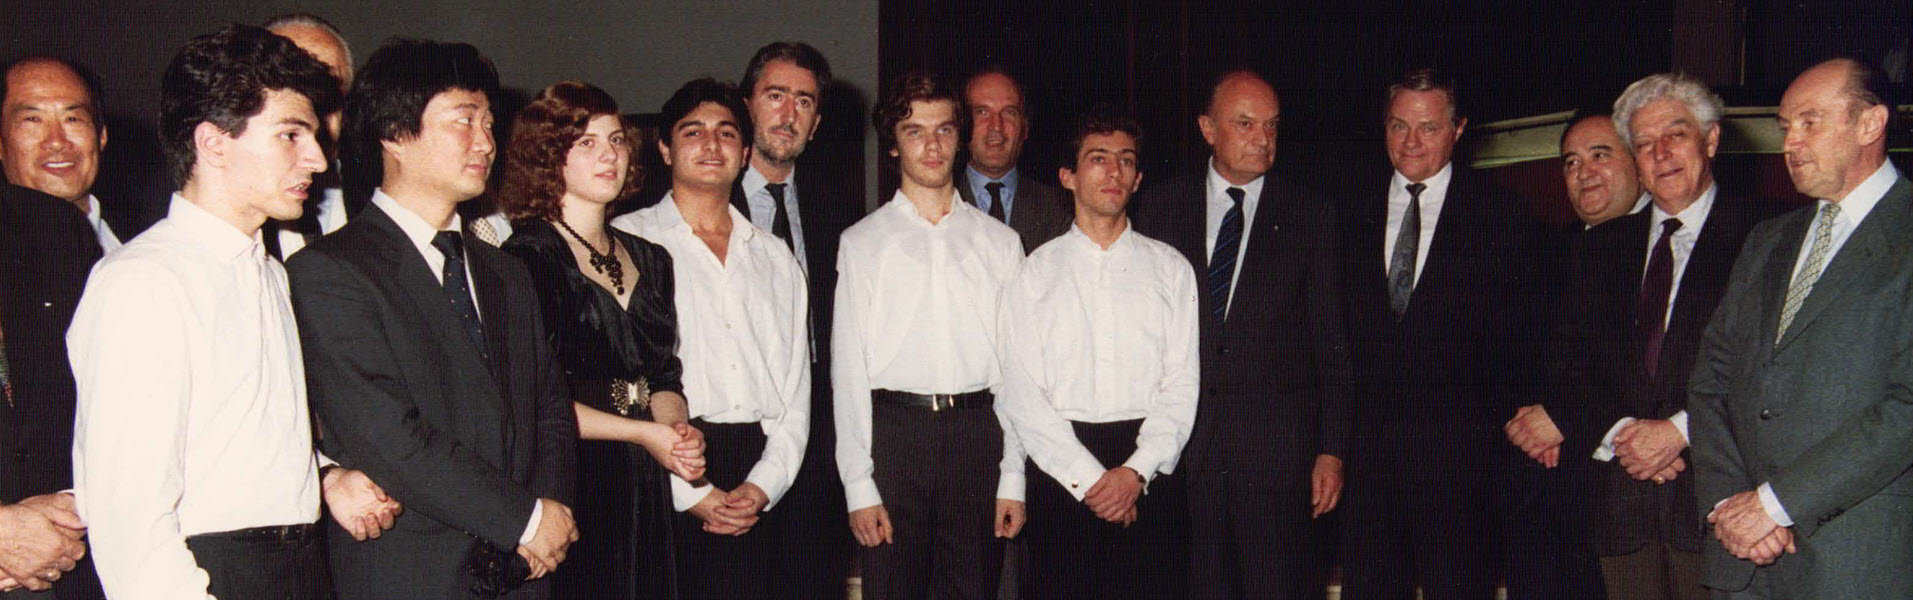 Finalisti e giuria del premio paganini 1990